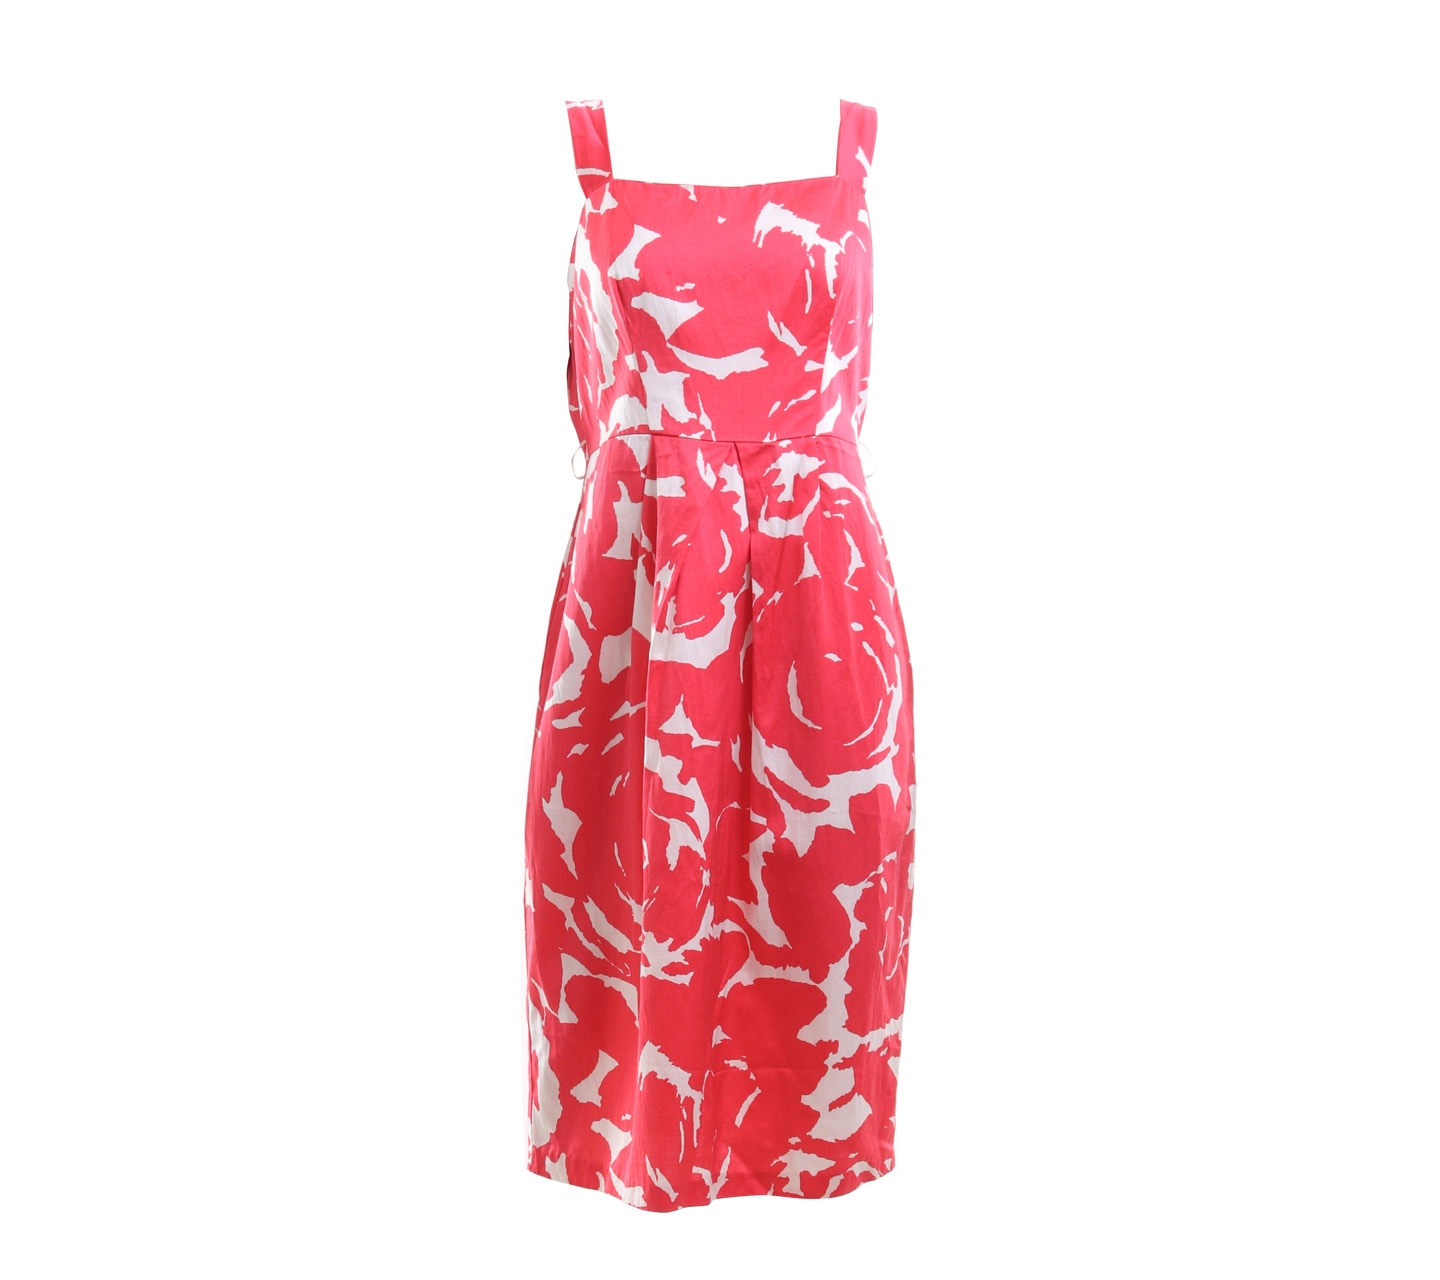 Jacqui-E Printed Pink Mini Dress